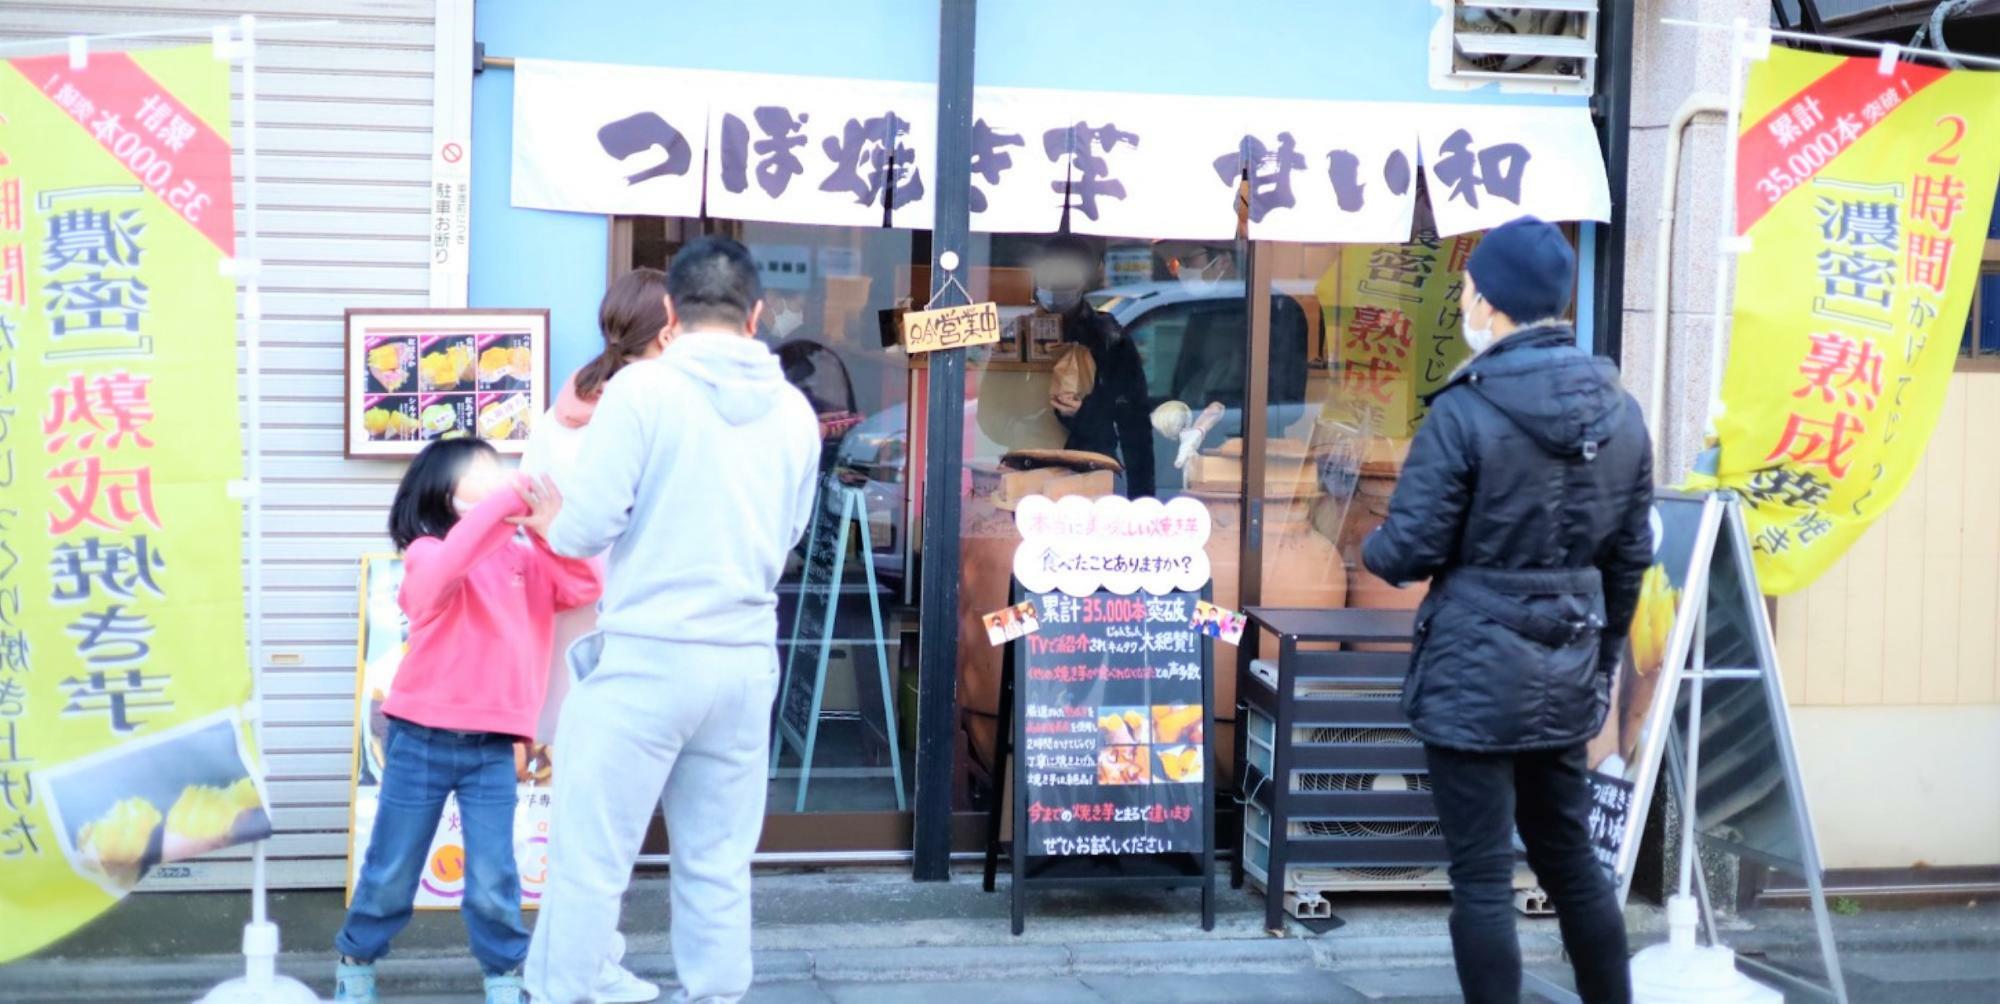 大師公園前のお店にはおいしい焼き芋の香りと多くの人だかりが。